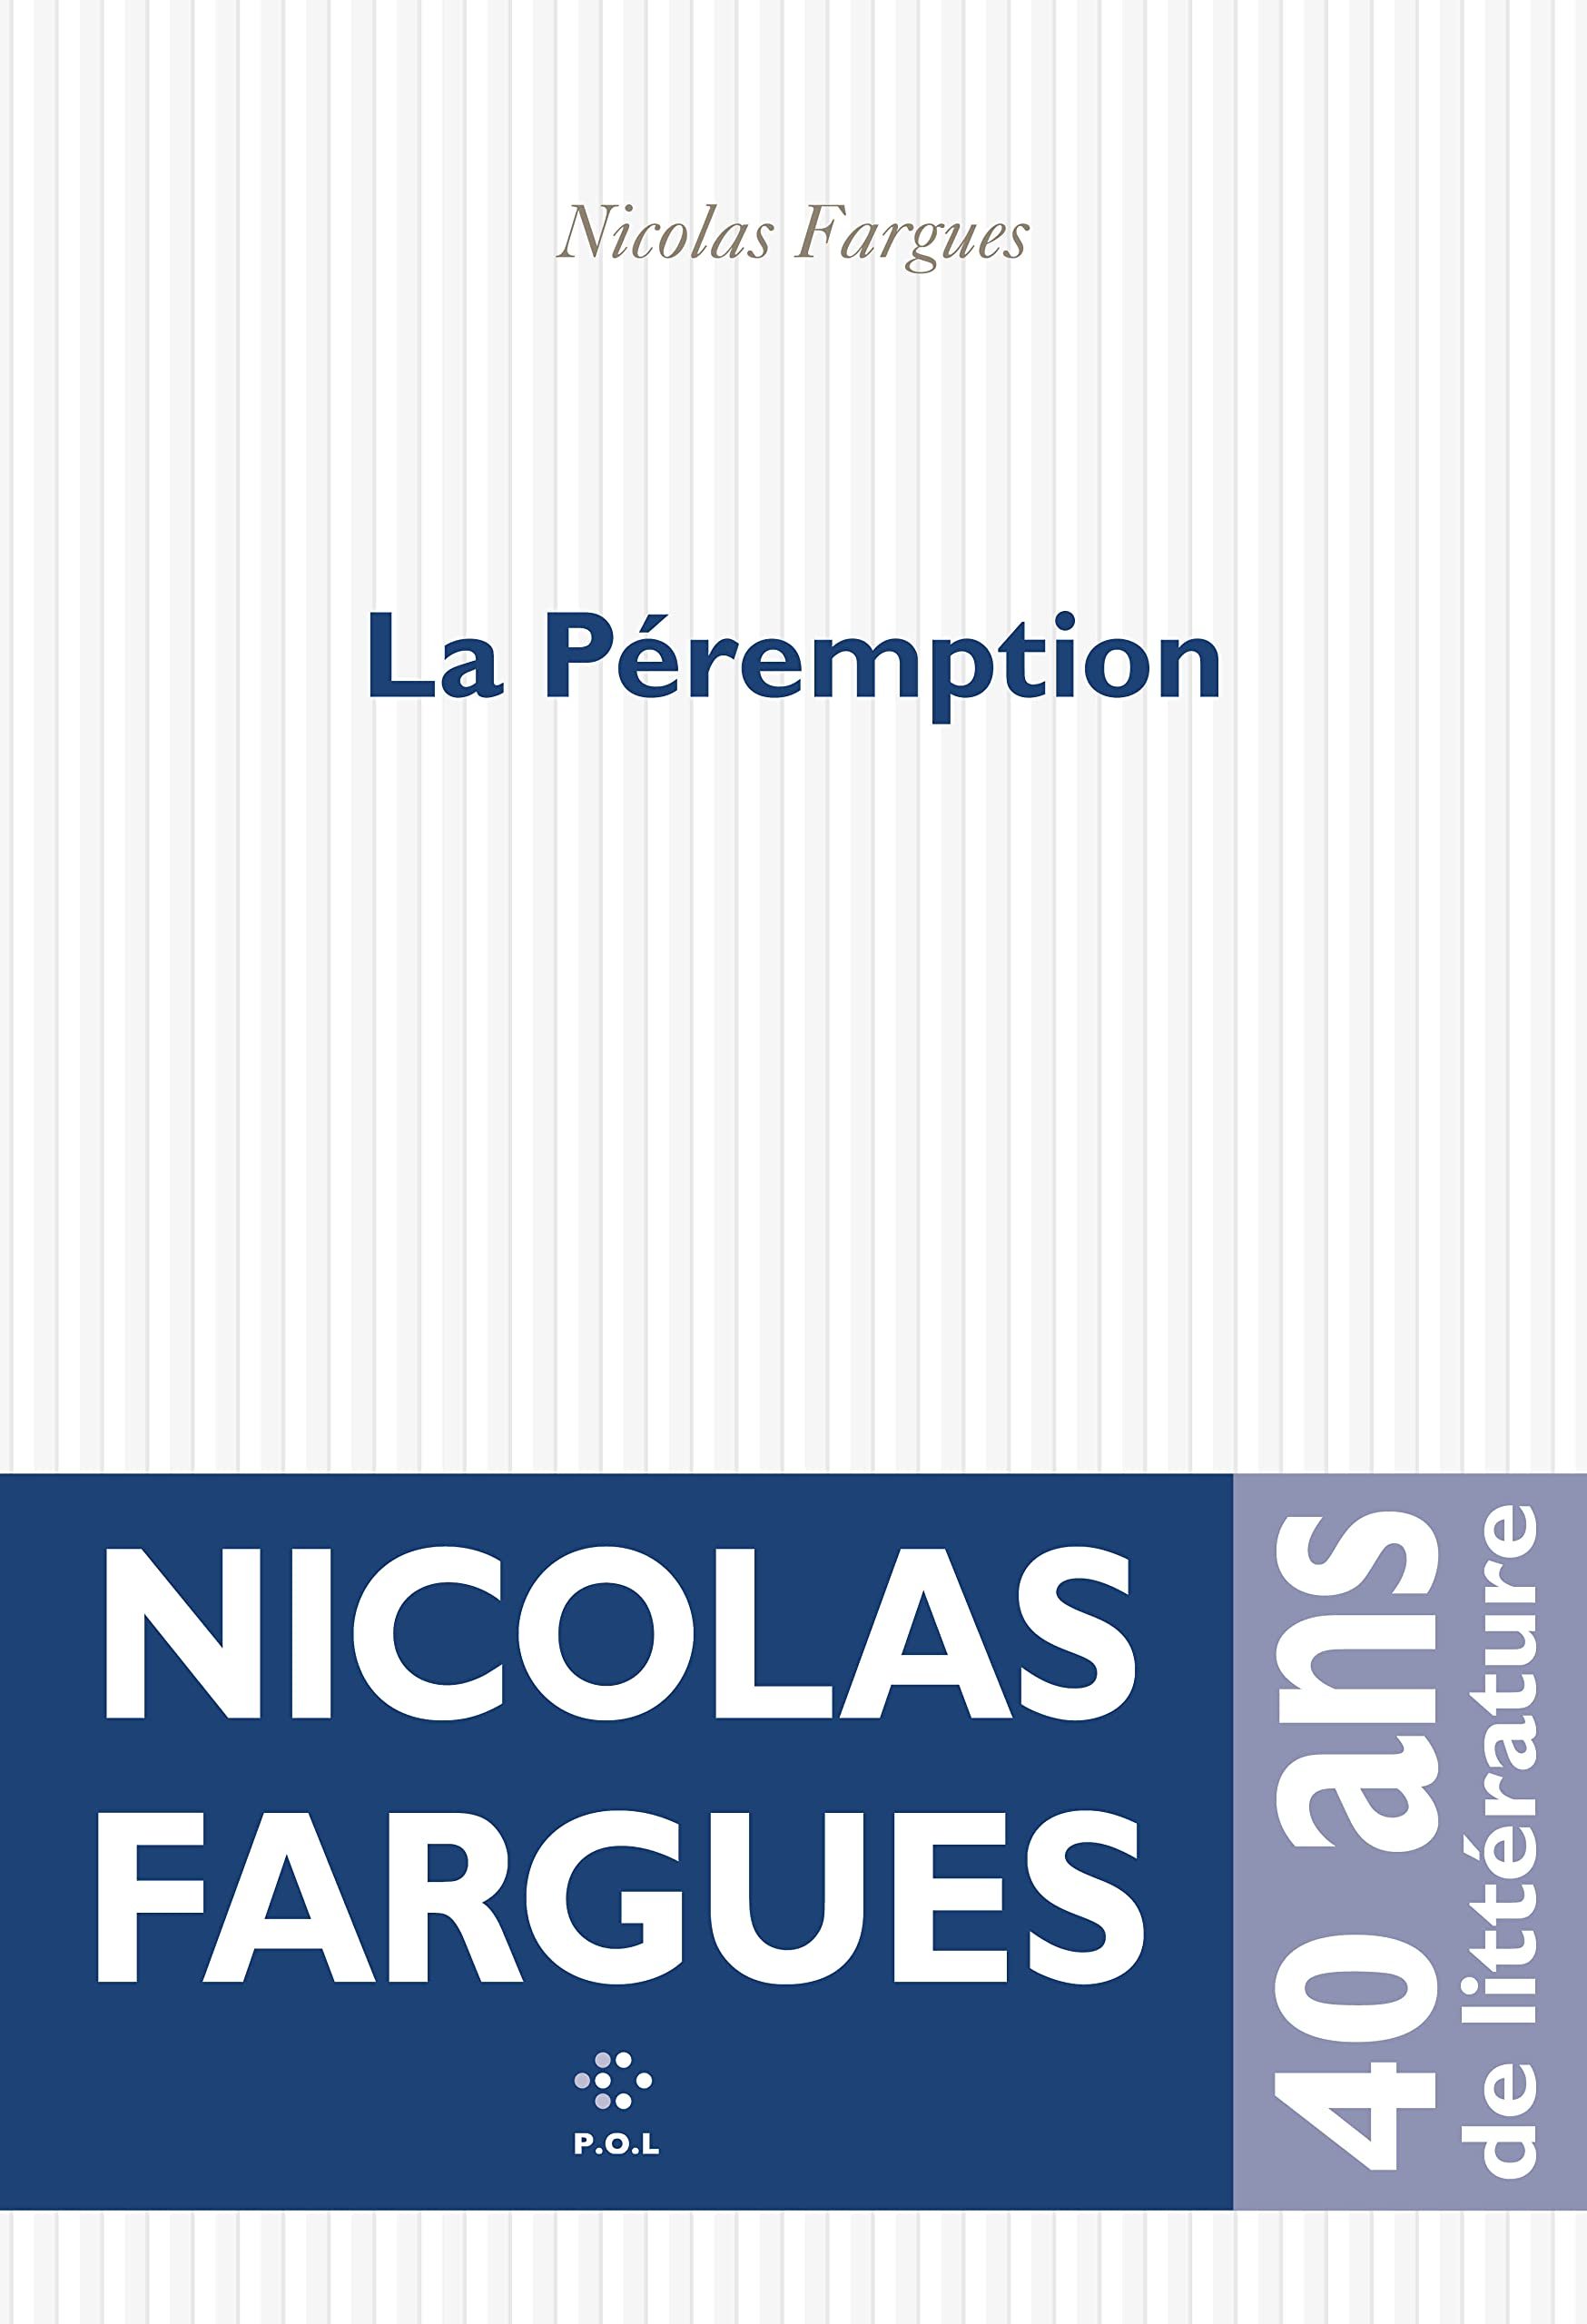 Nicolas Fargues – La Péremption